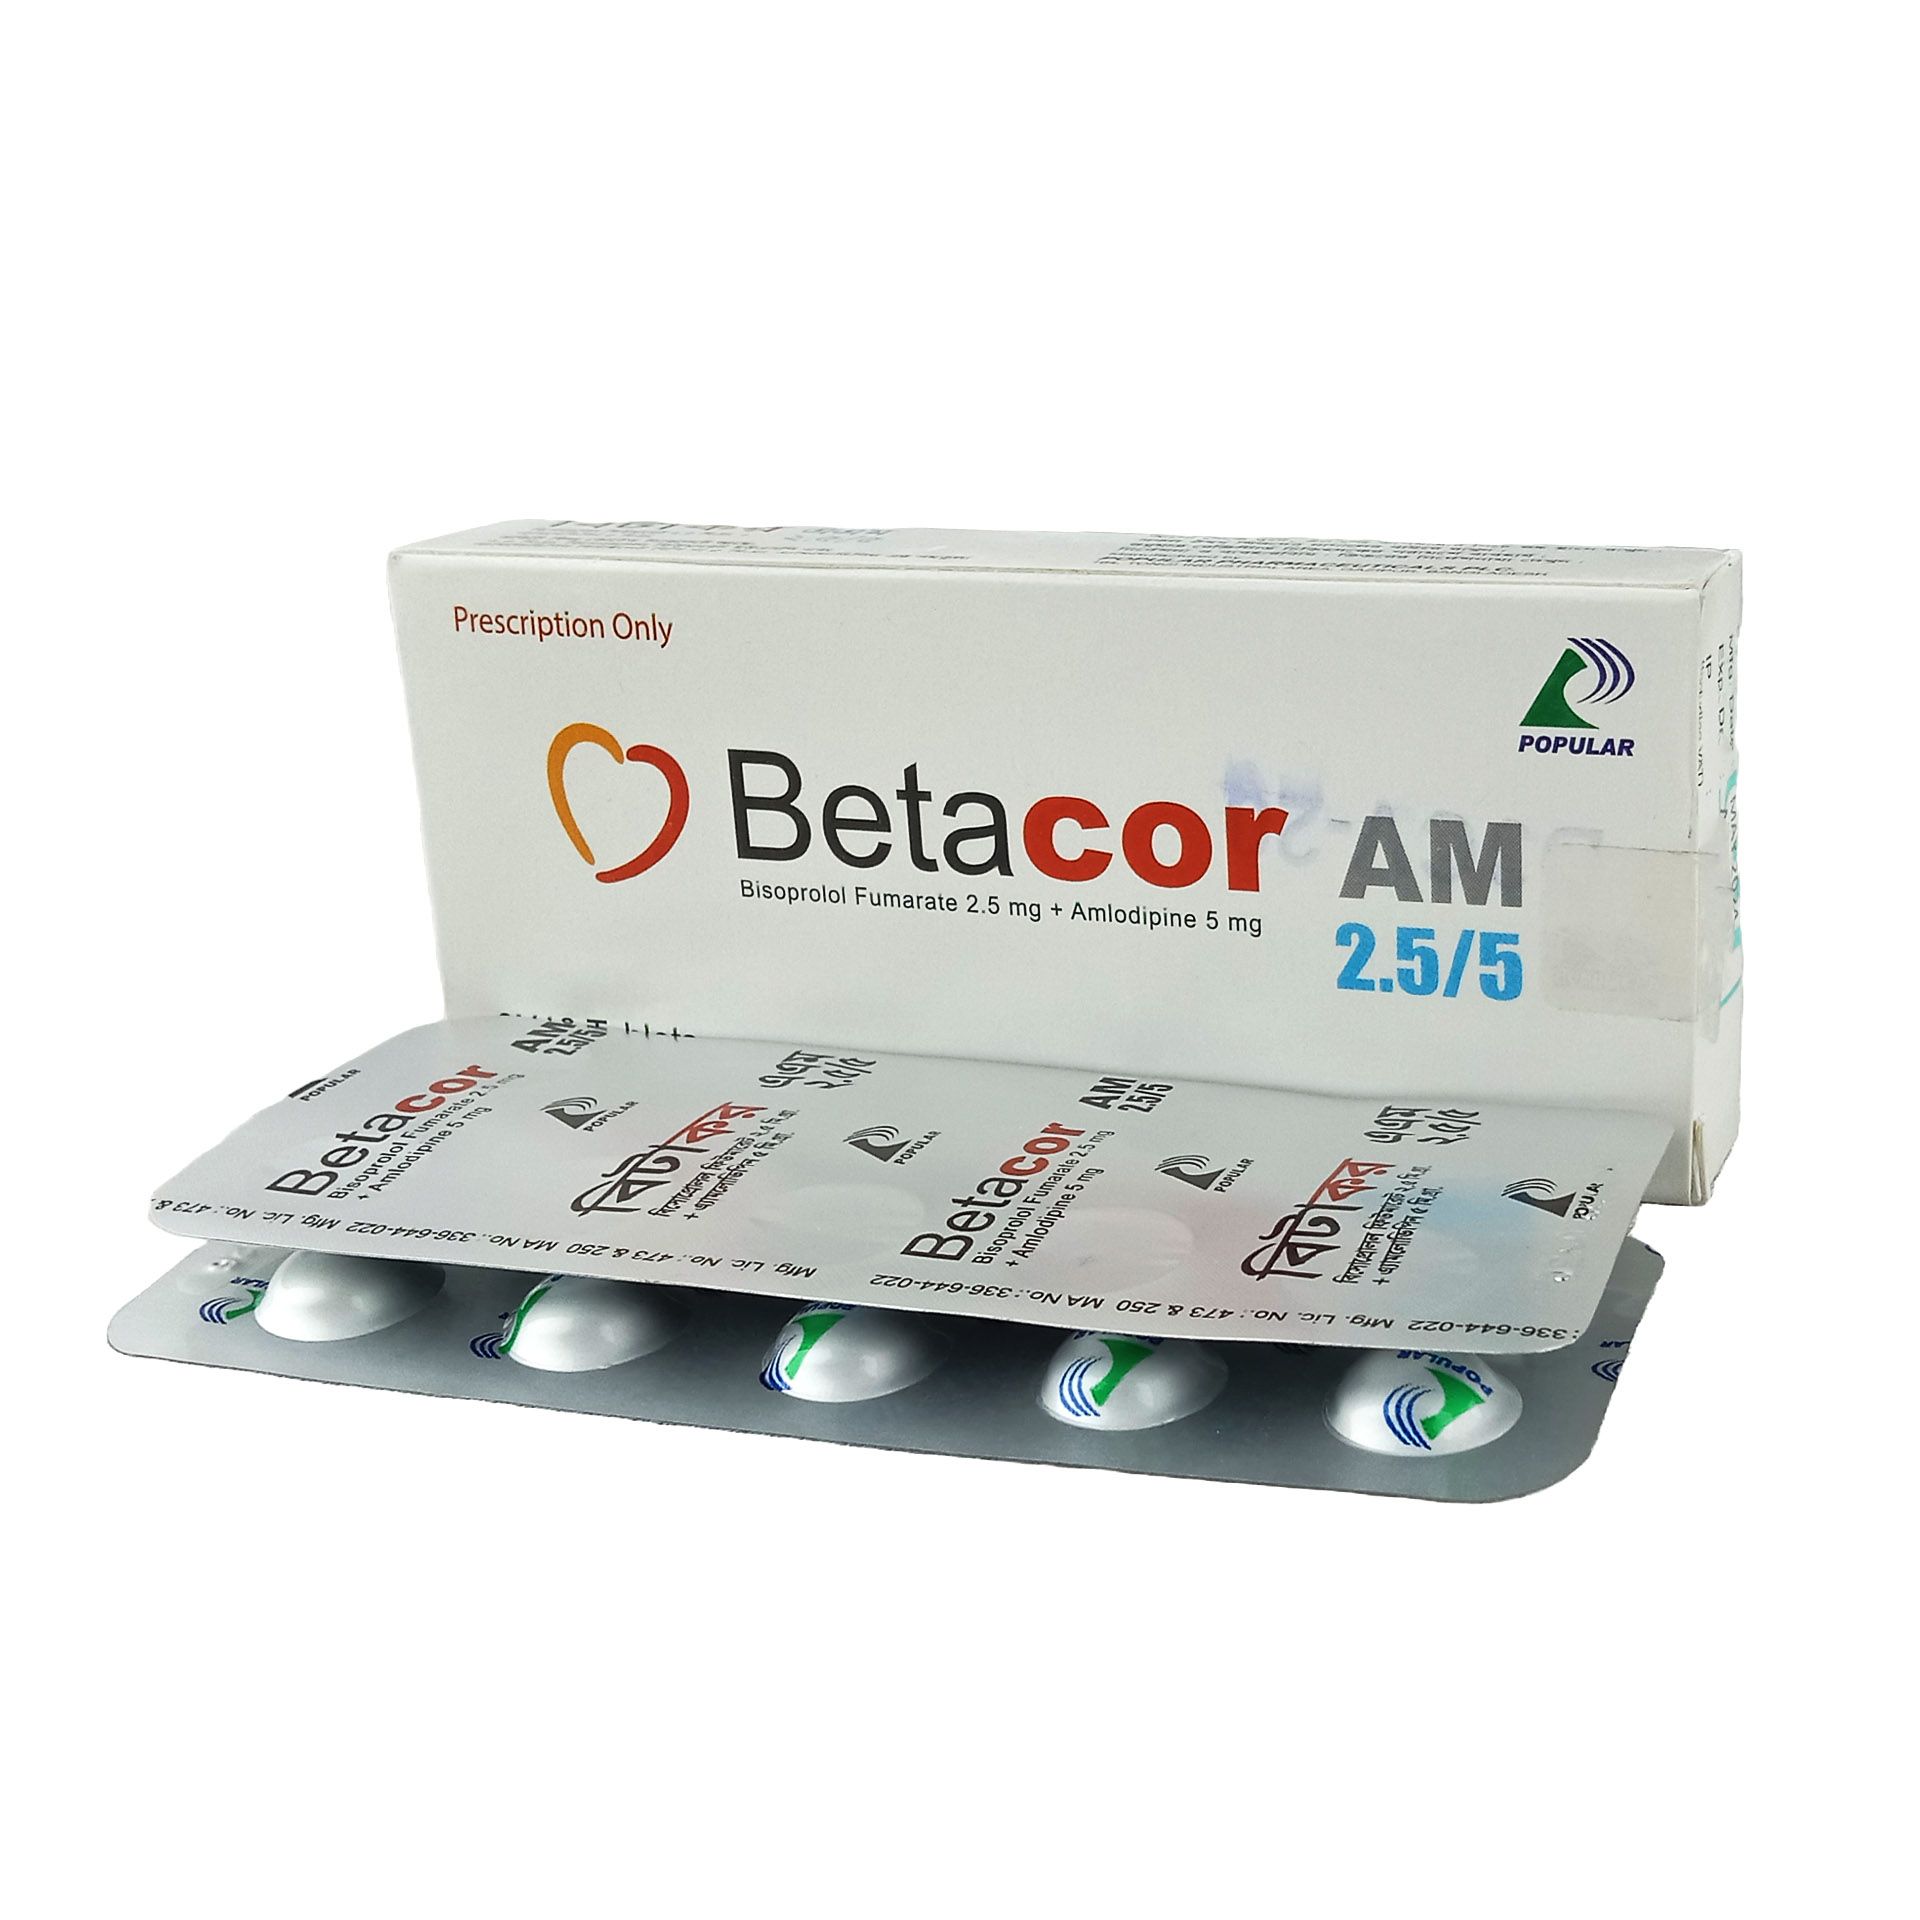 Betacor AM 2.5/5 2.5mg+5mg Tablet